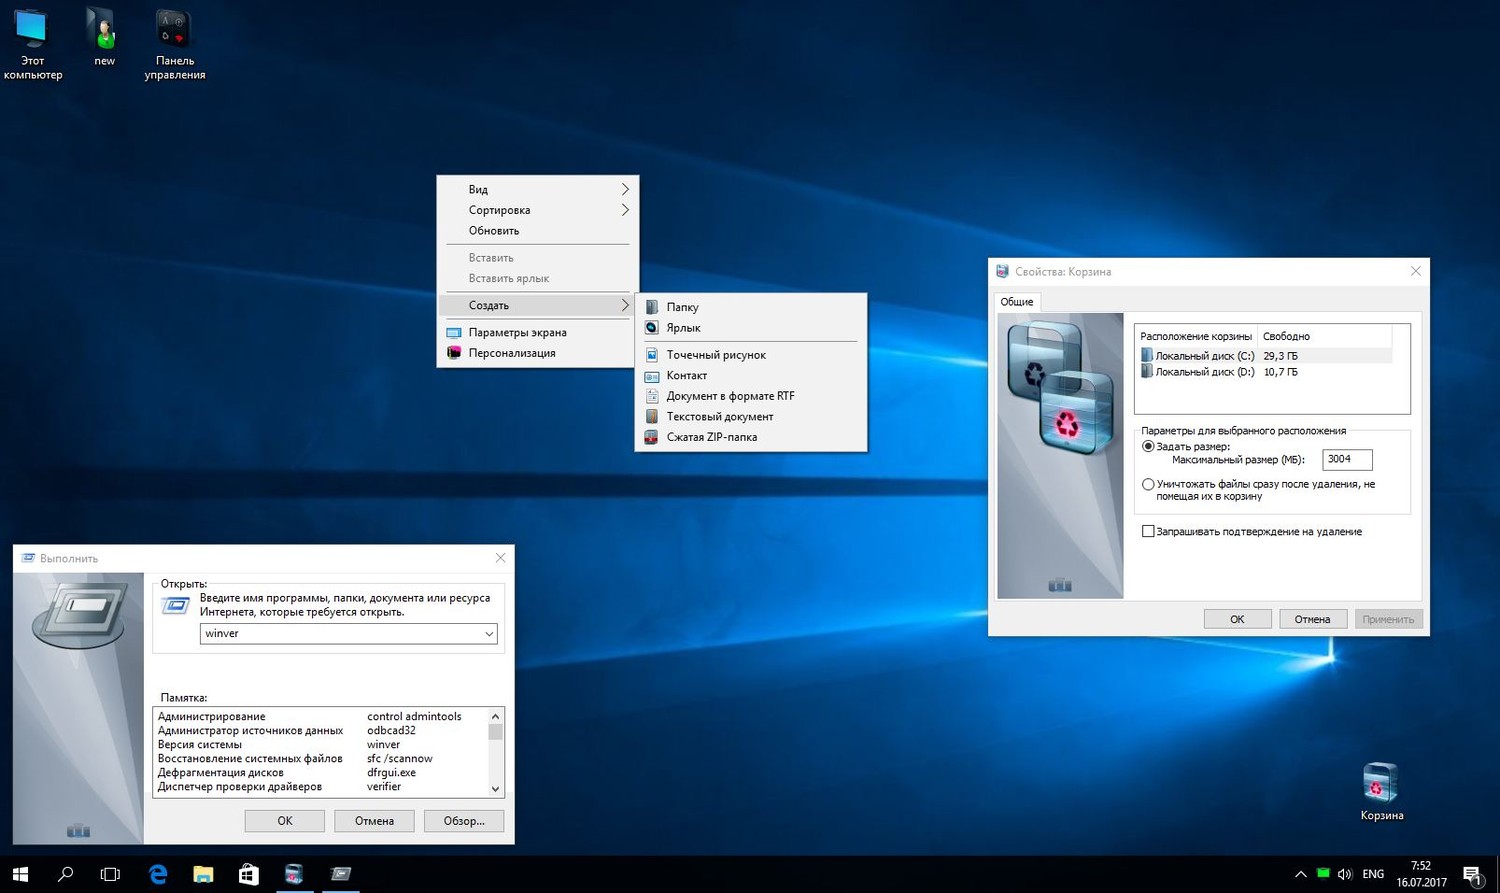 Обновление версия 32. Windows 10 32/64бит корпоративная LTSB 14393.223 V.85.16.